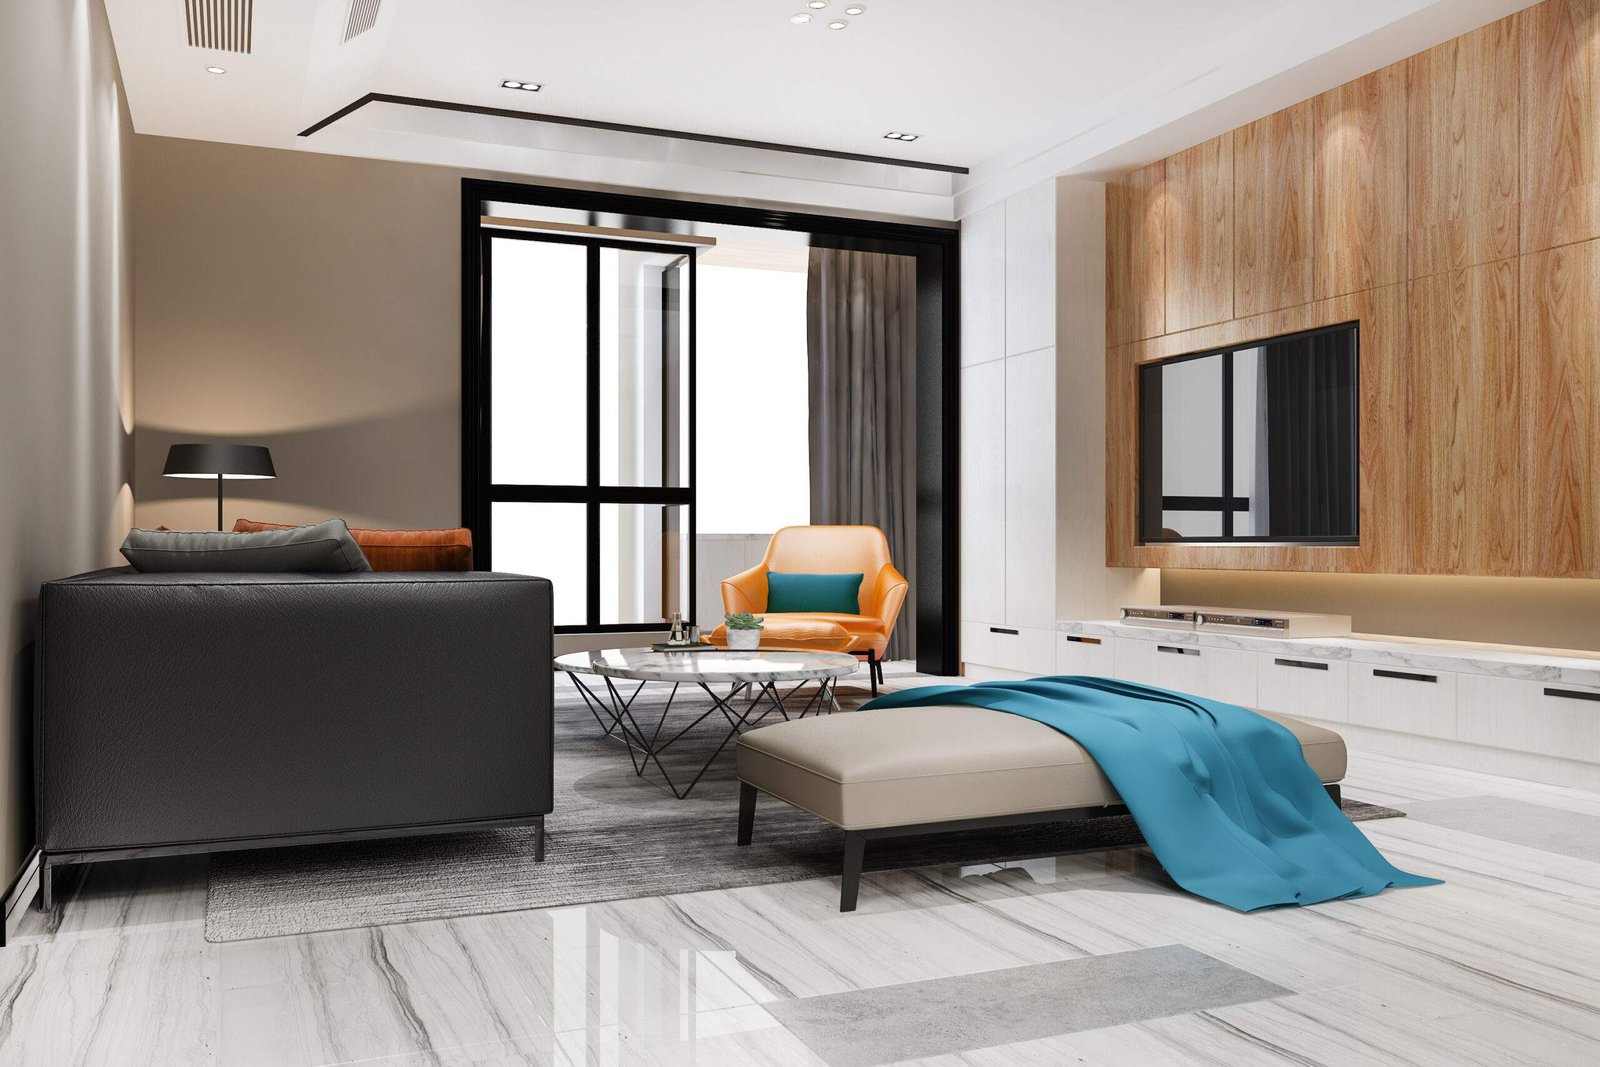 Living Room Tile